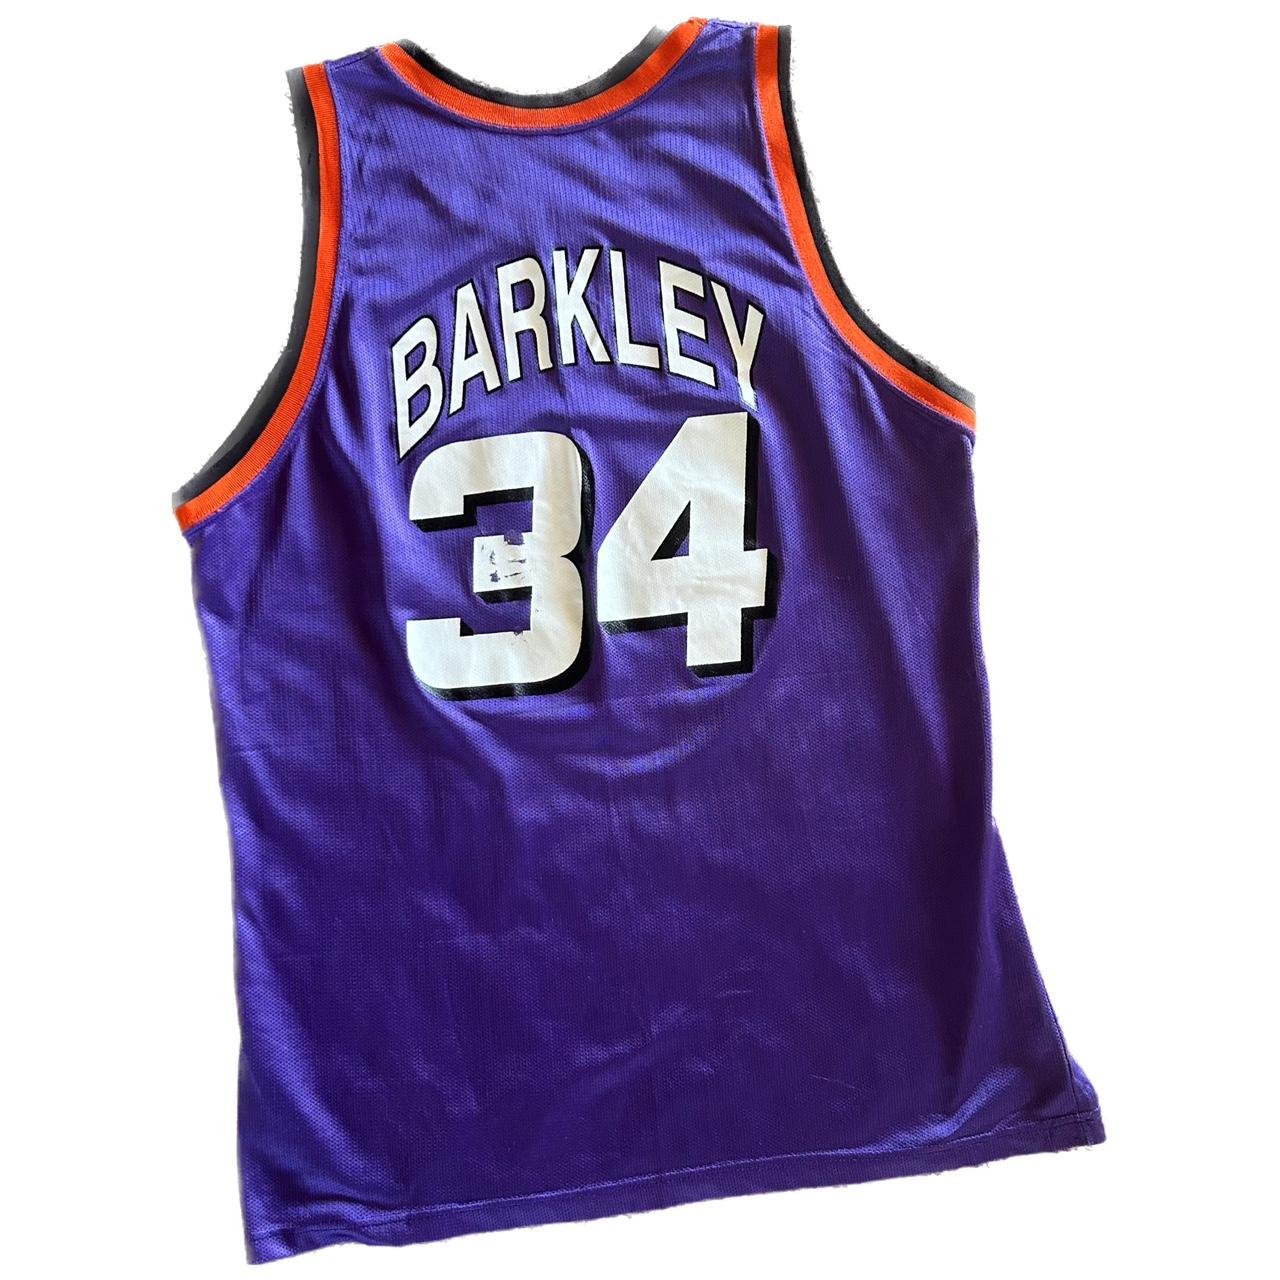 Vintage Phoenix Suns Charles Barkley Jersey Size - Depop